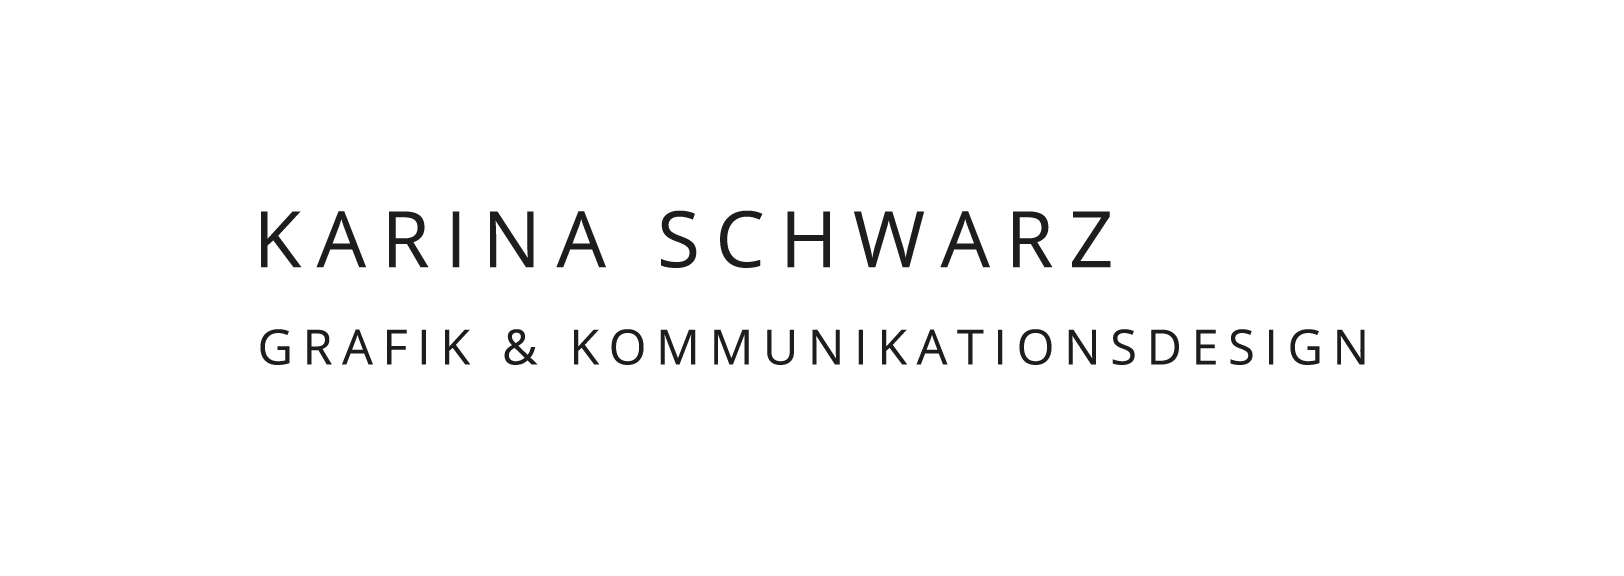 Karina Schwarz, Grafik- und Kommunikationsdesign